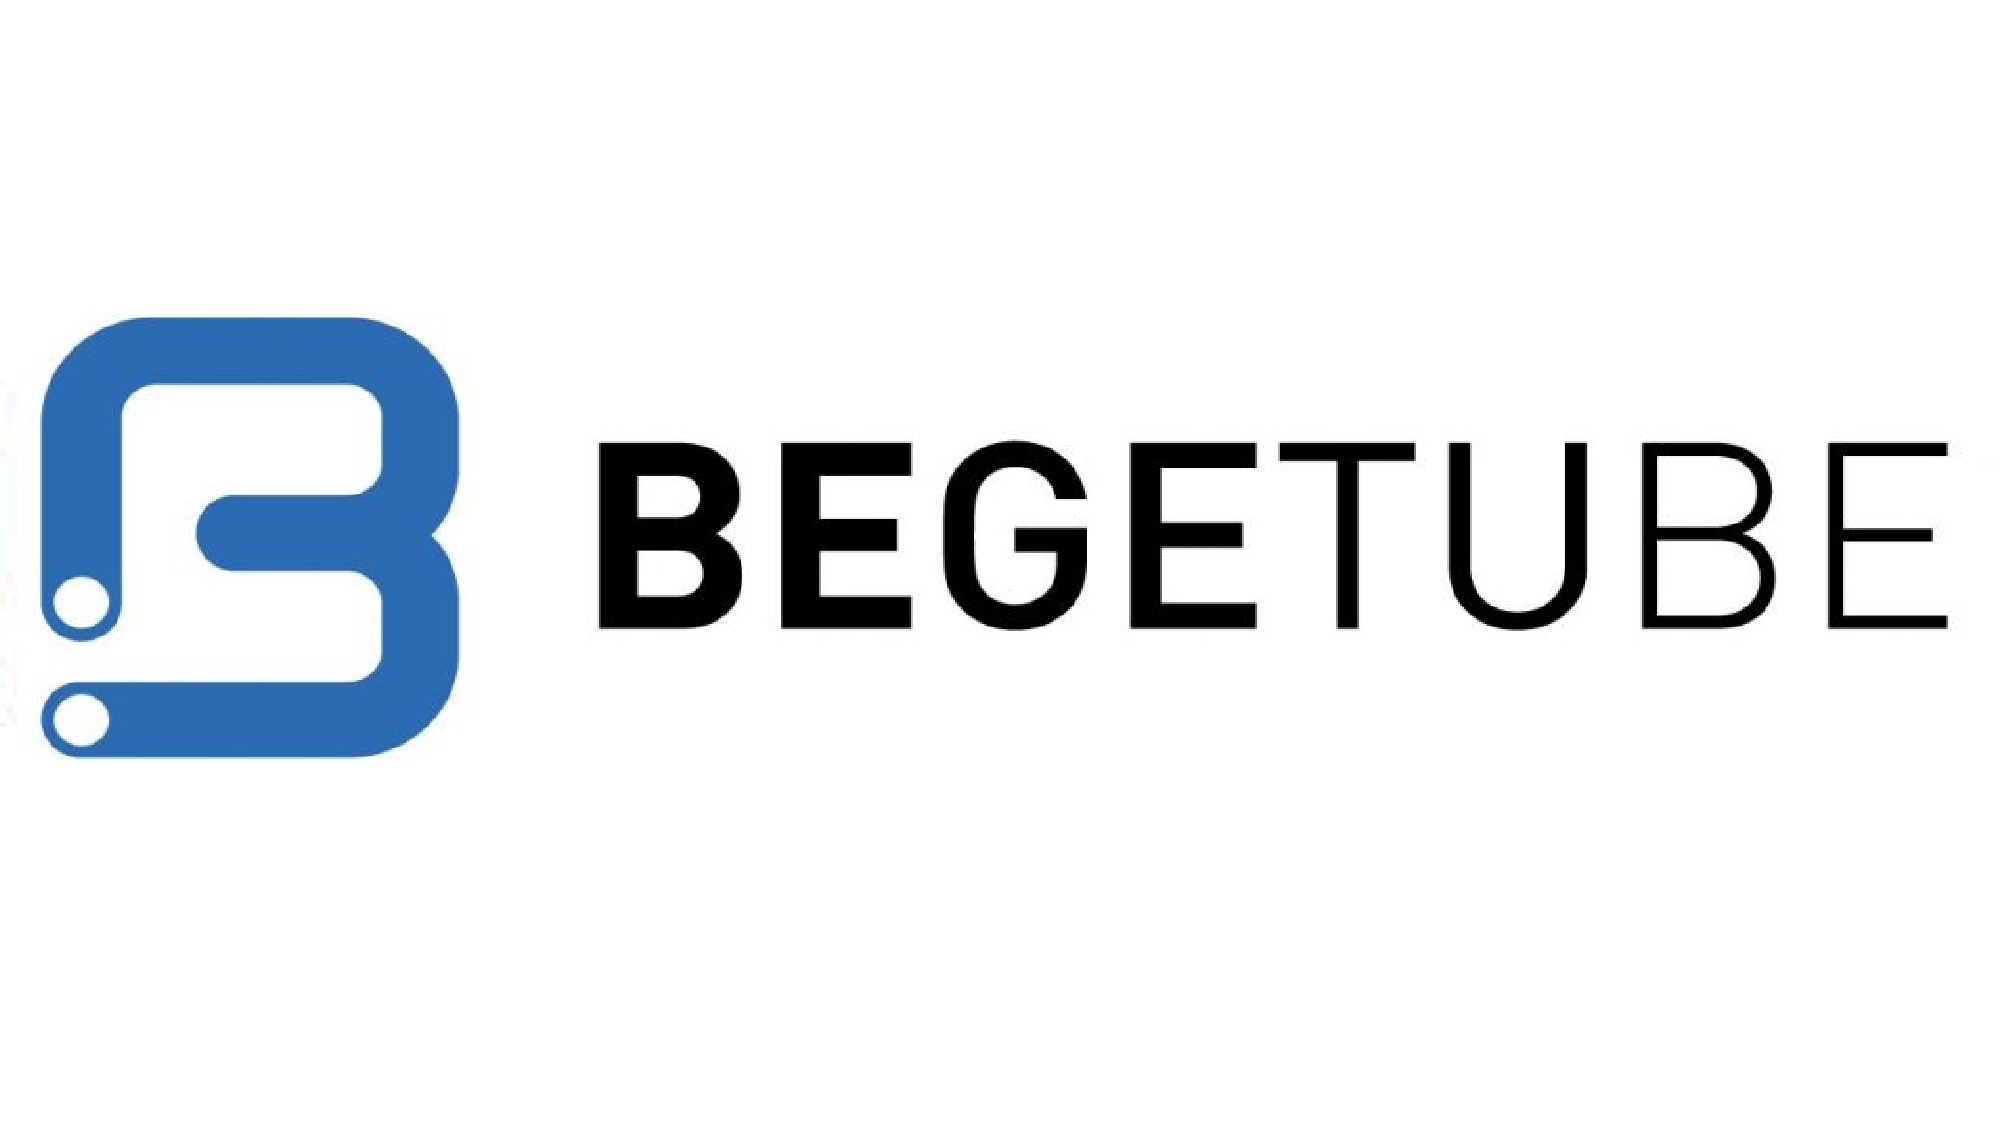 Begetube is een partner van Mertens CV, Sanitair en Onderhoud voor de Hernieuwbare energie